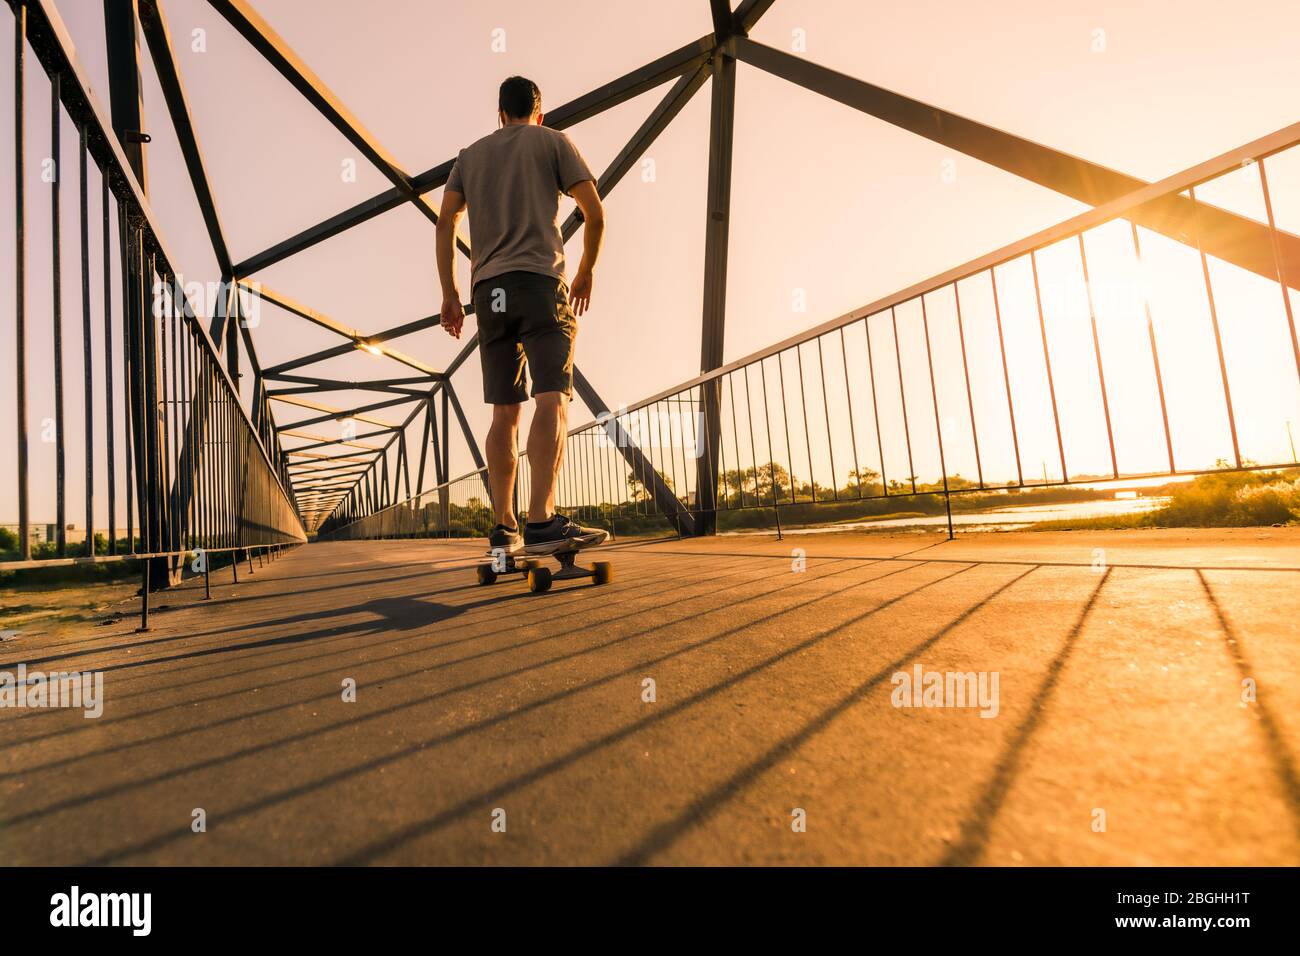 La vitesse du skate-boarder passe par le pont piétonnier au coucher du soleil. Banque D'Images